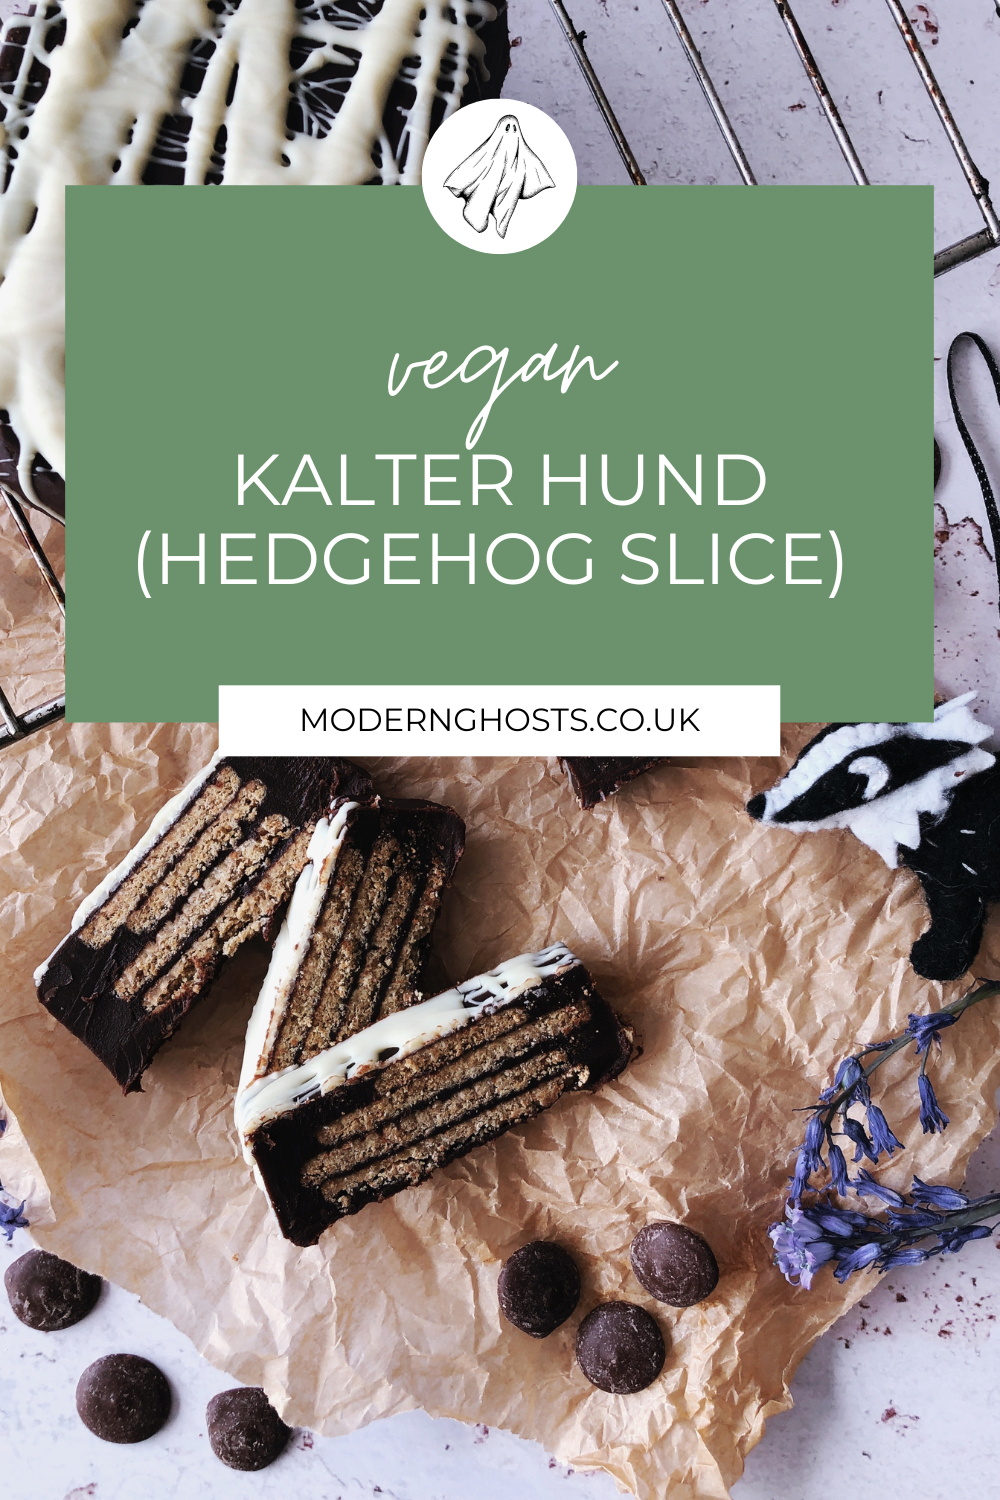 Vegan Kalter Hund recipe on modern ghosts.co.uk